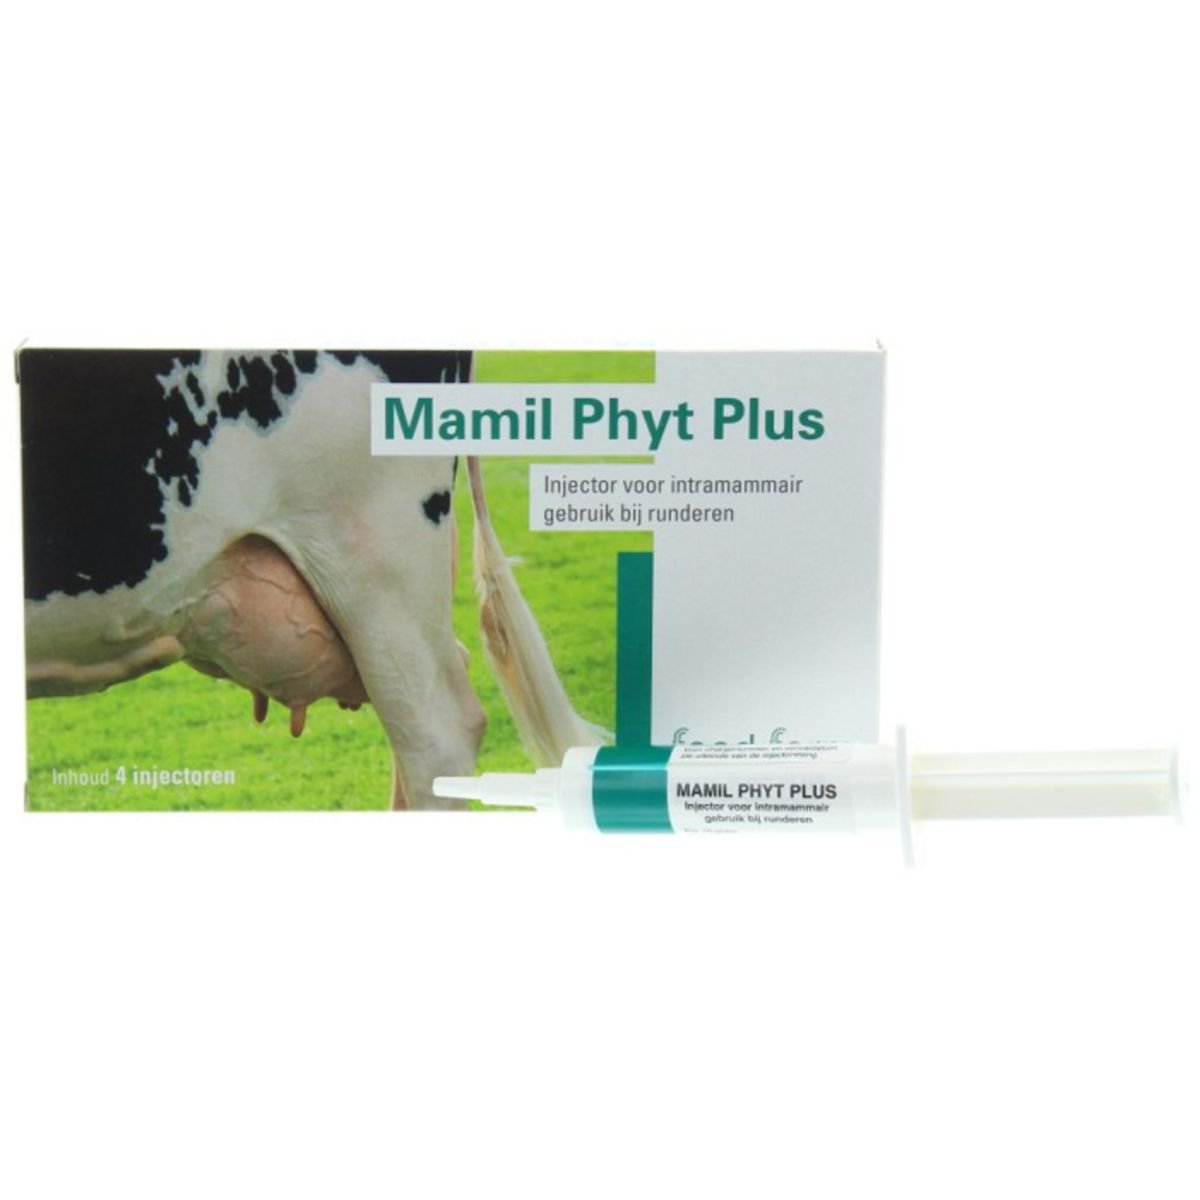 Feed Farm Mamil Phyt Plus Mastitis Injecteurs. Pour combattre et prévenir les infections du pis.